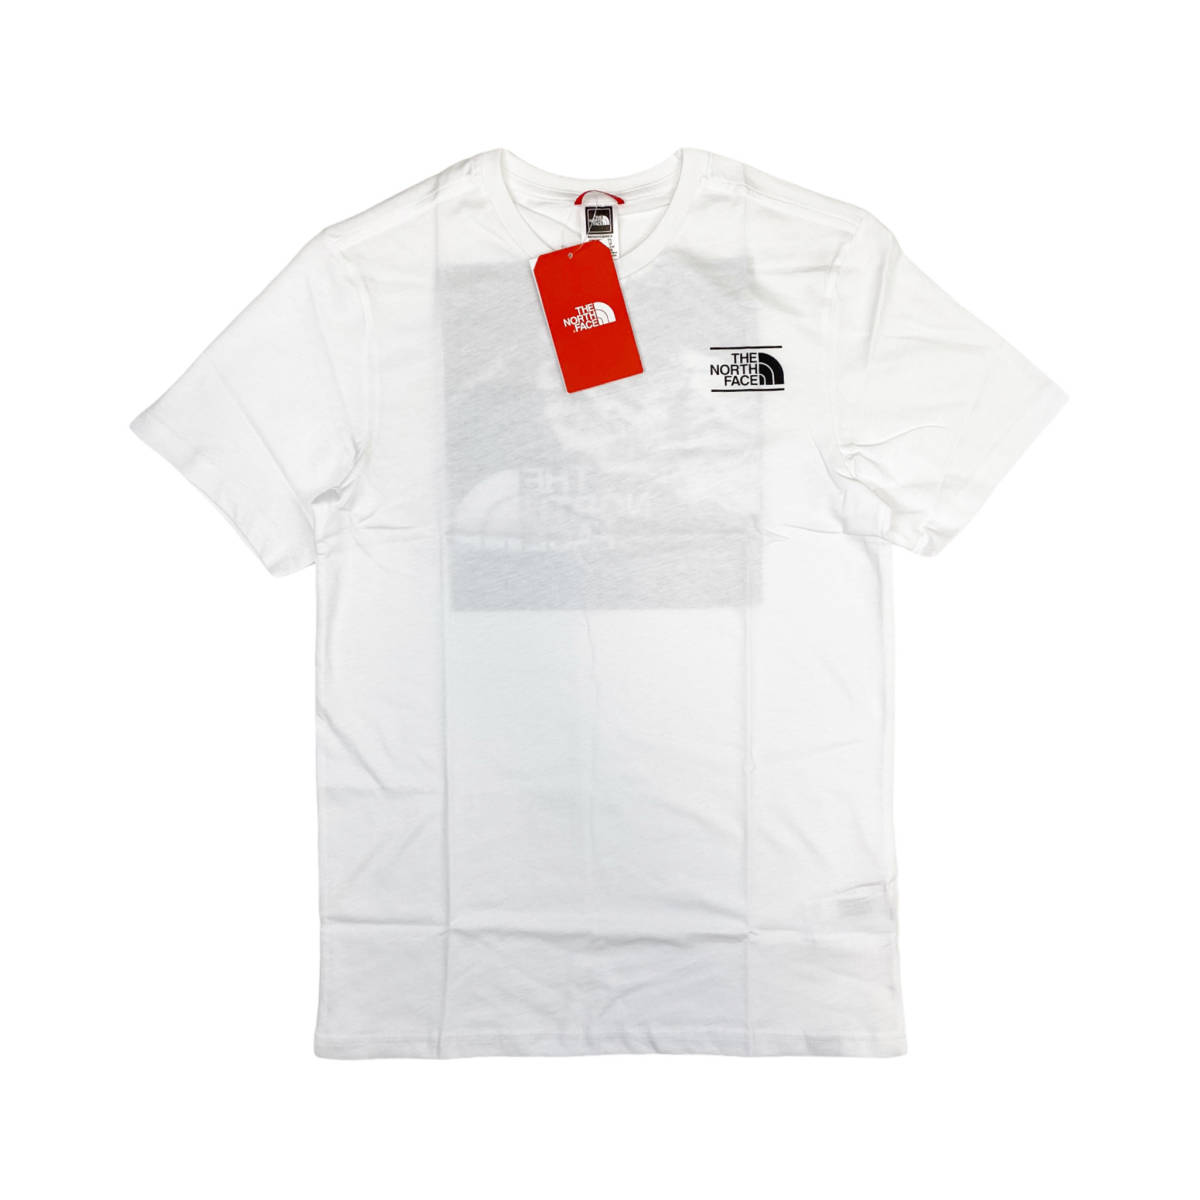 ノースフェイス Tシャツ ボックス 半袖 グラフィック バックロゴ トップス ホワイト 2XLサイズ NF0A3S3R THE NORTH FACE GRAPHIC TEE 新品